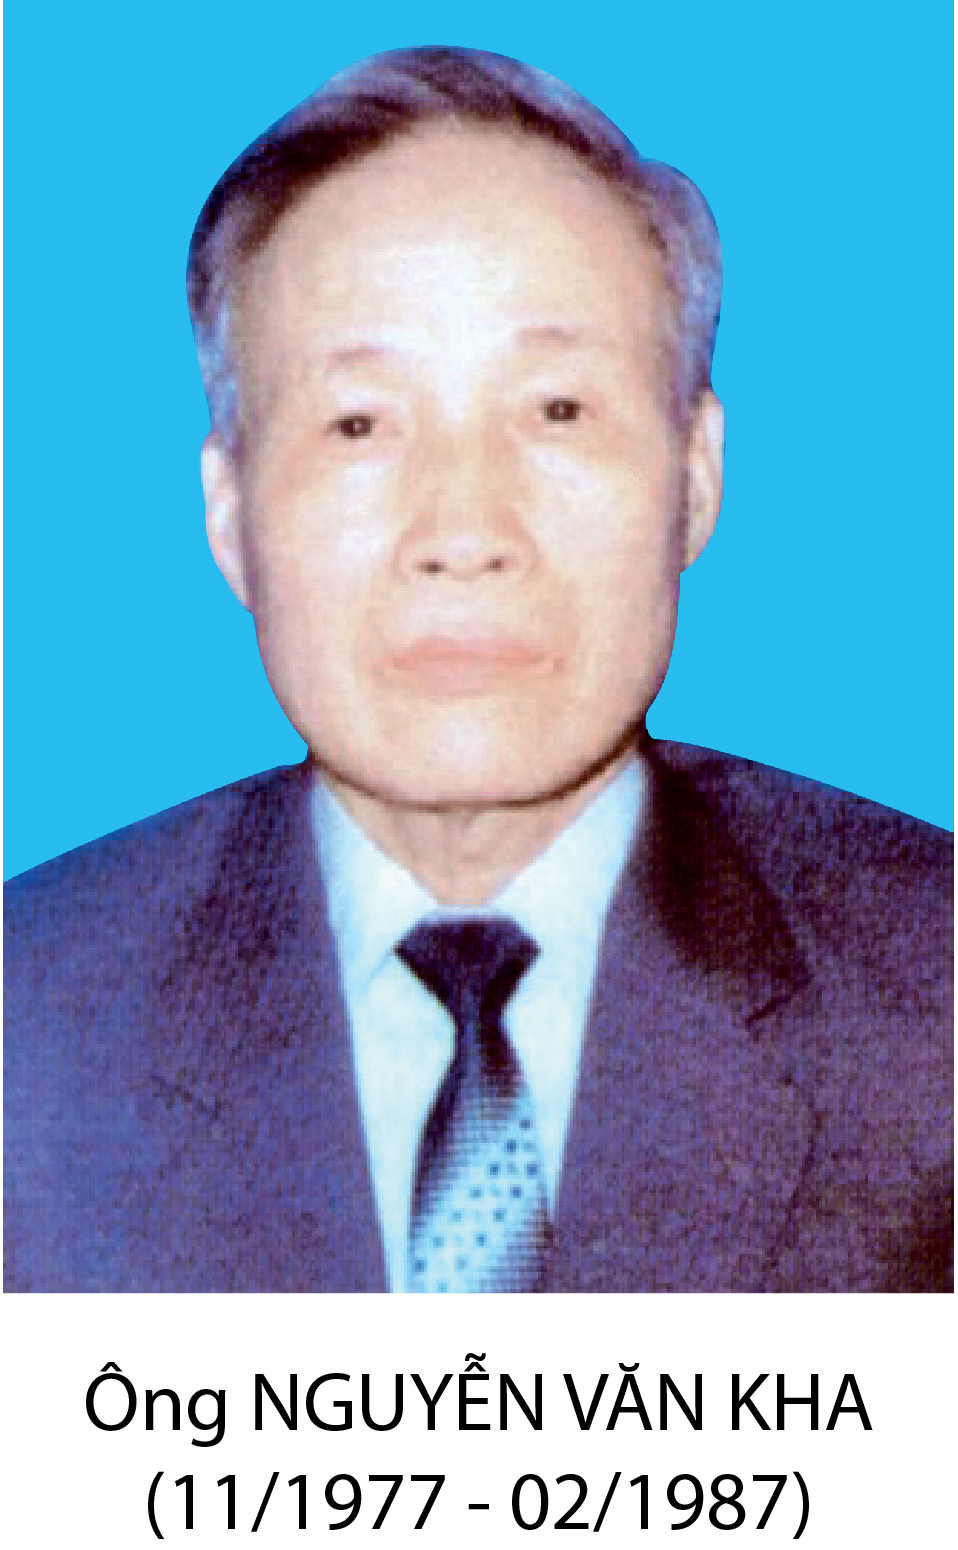 BT Nguyen Van Kha